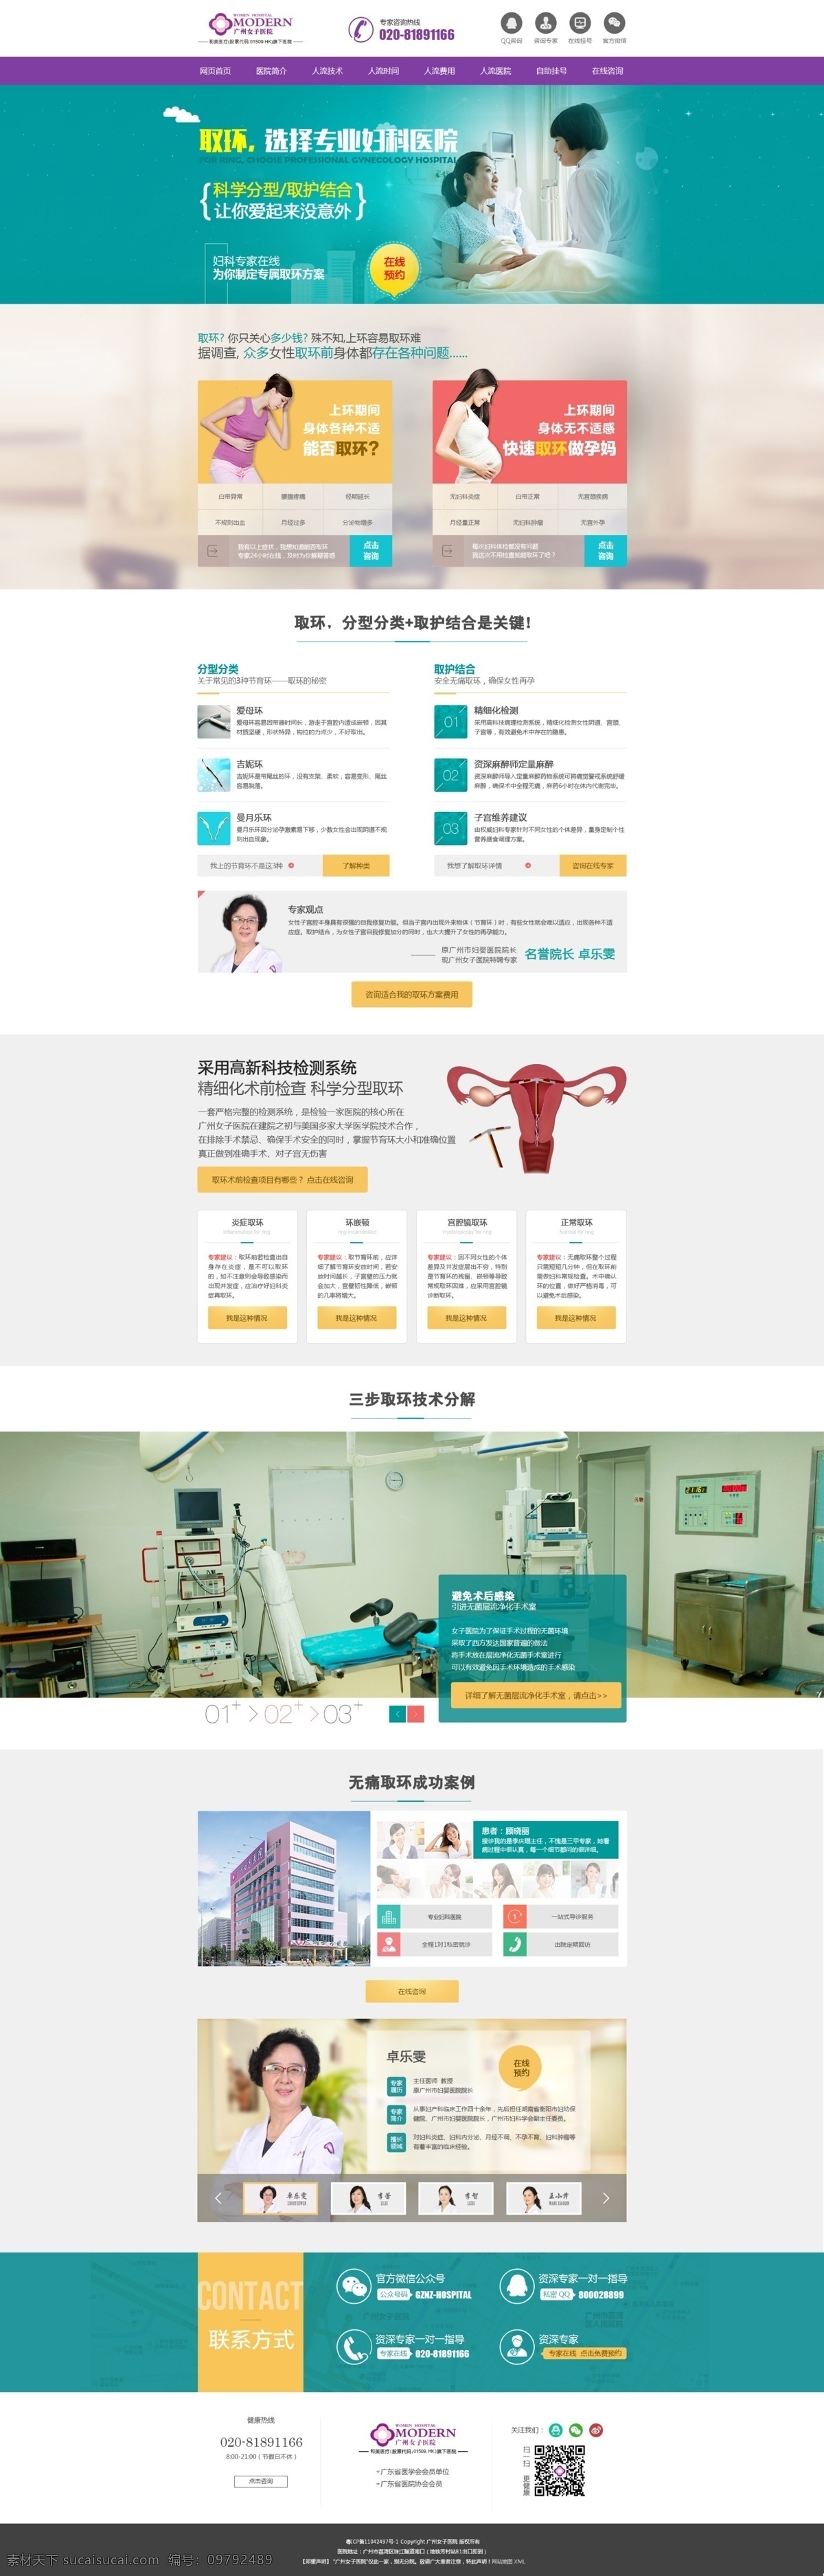 医疗专题 专题 医疗网站 手术 手术图片 图标 服务好 医疗 白色